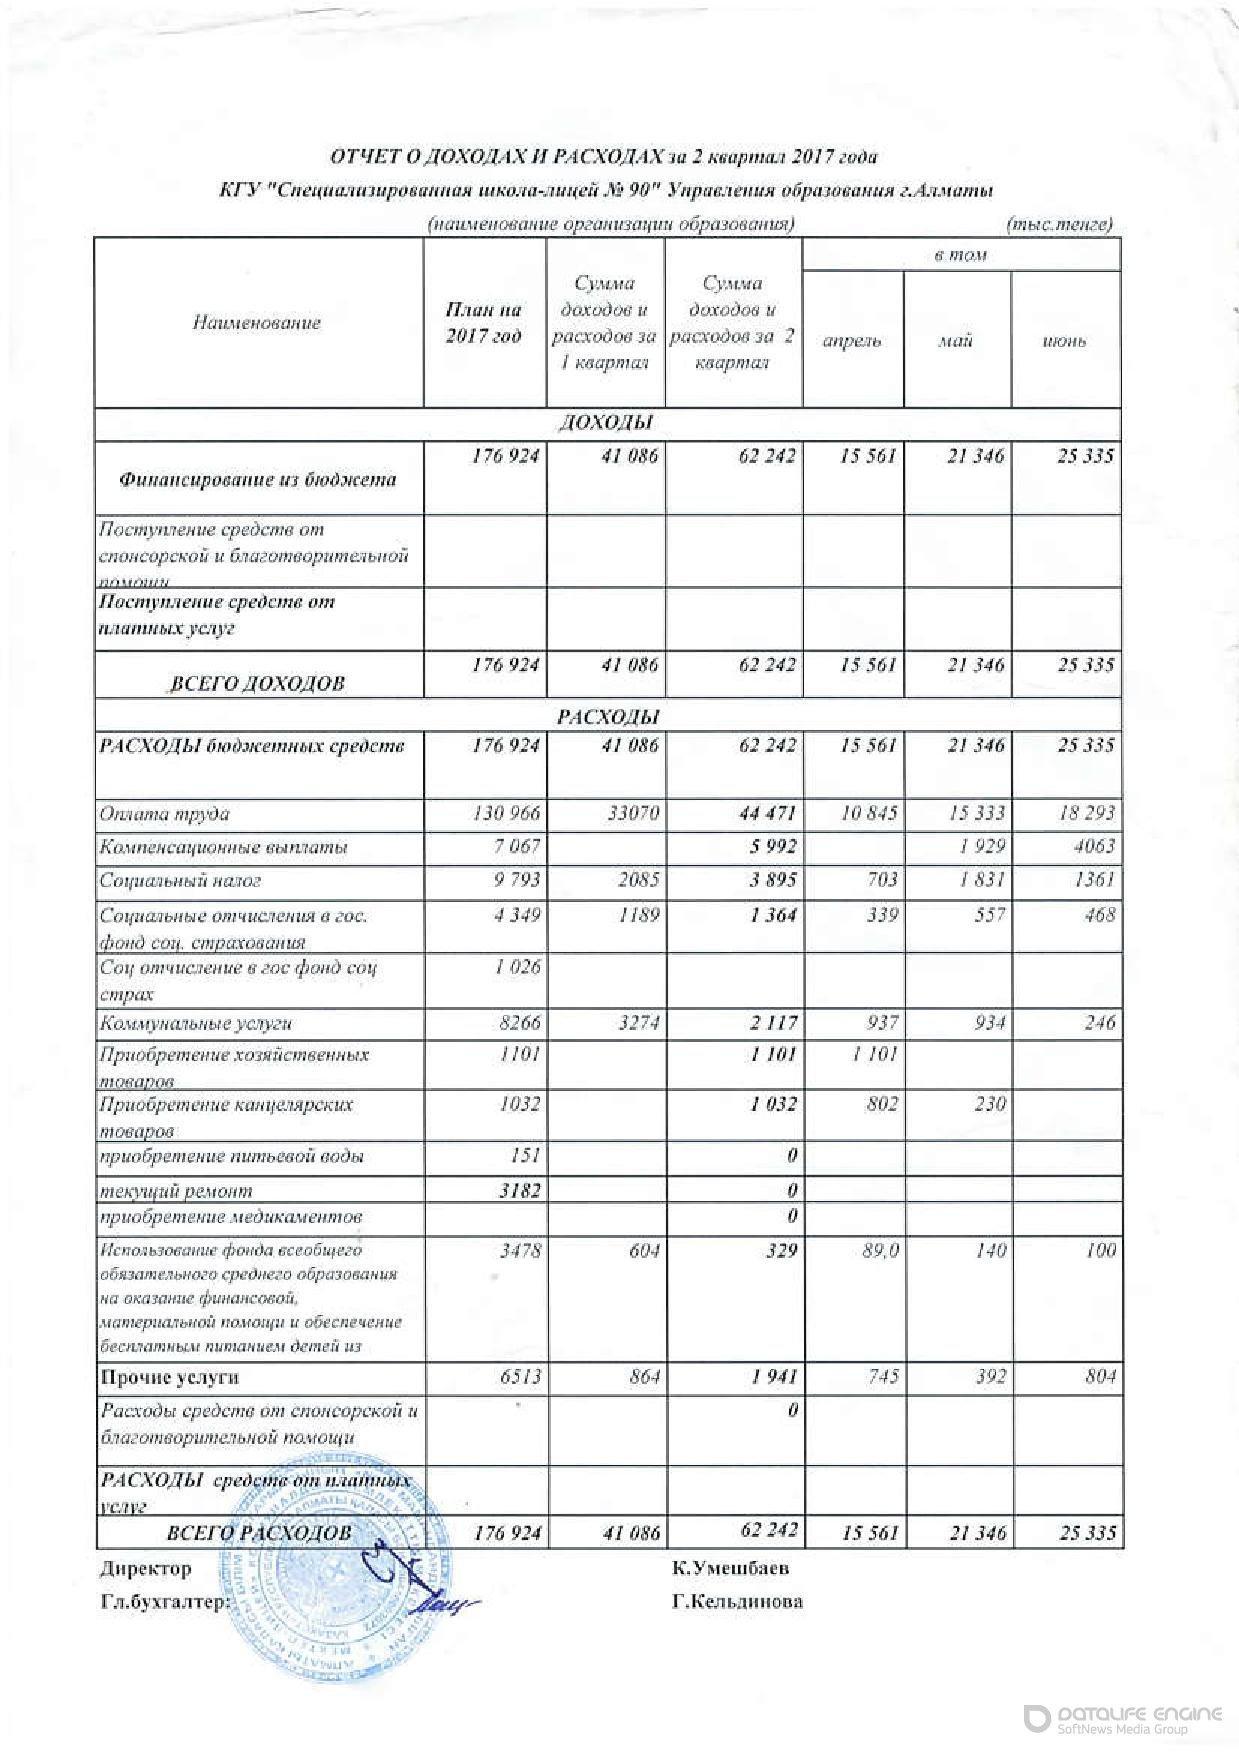 отчет о расходах и доходах 2кв 2017